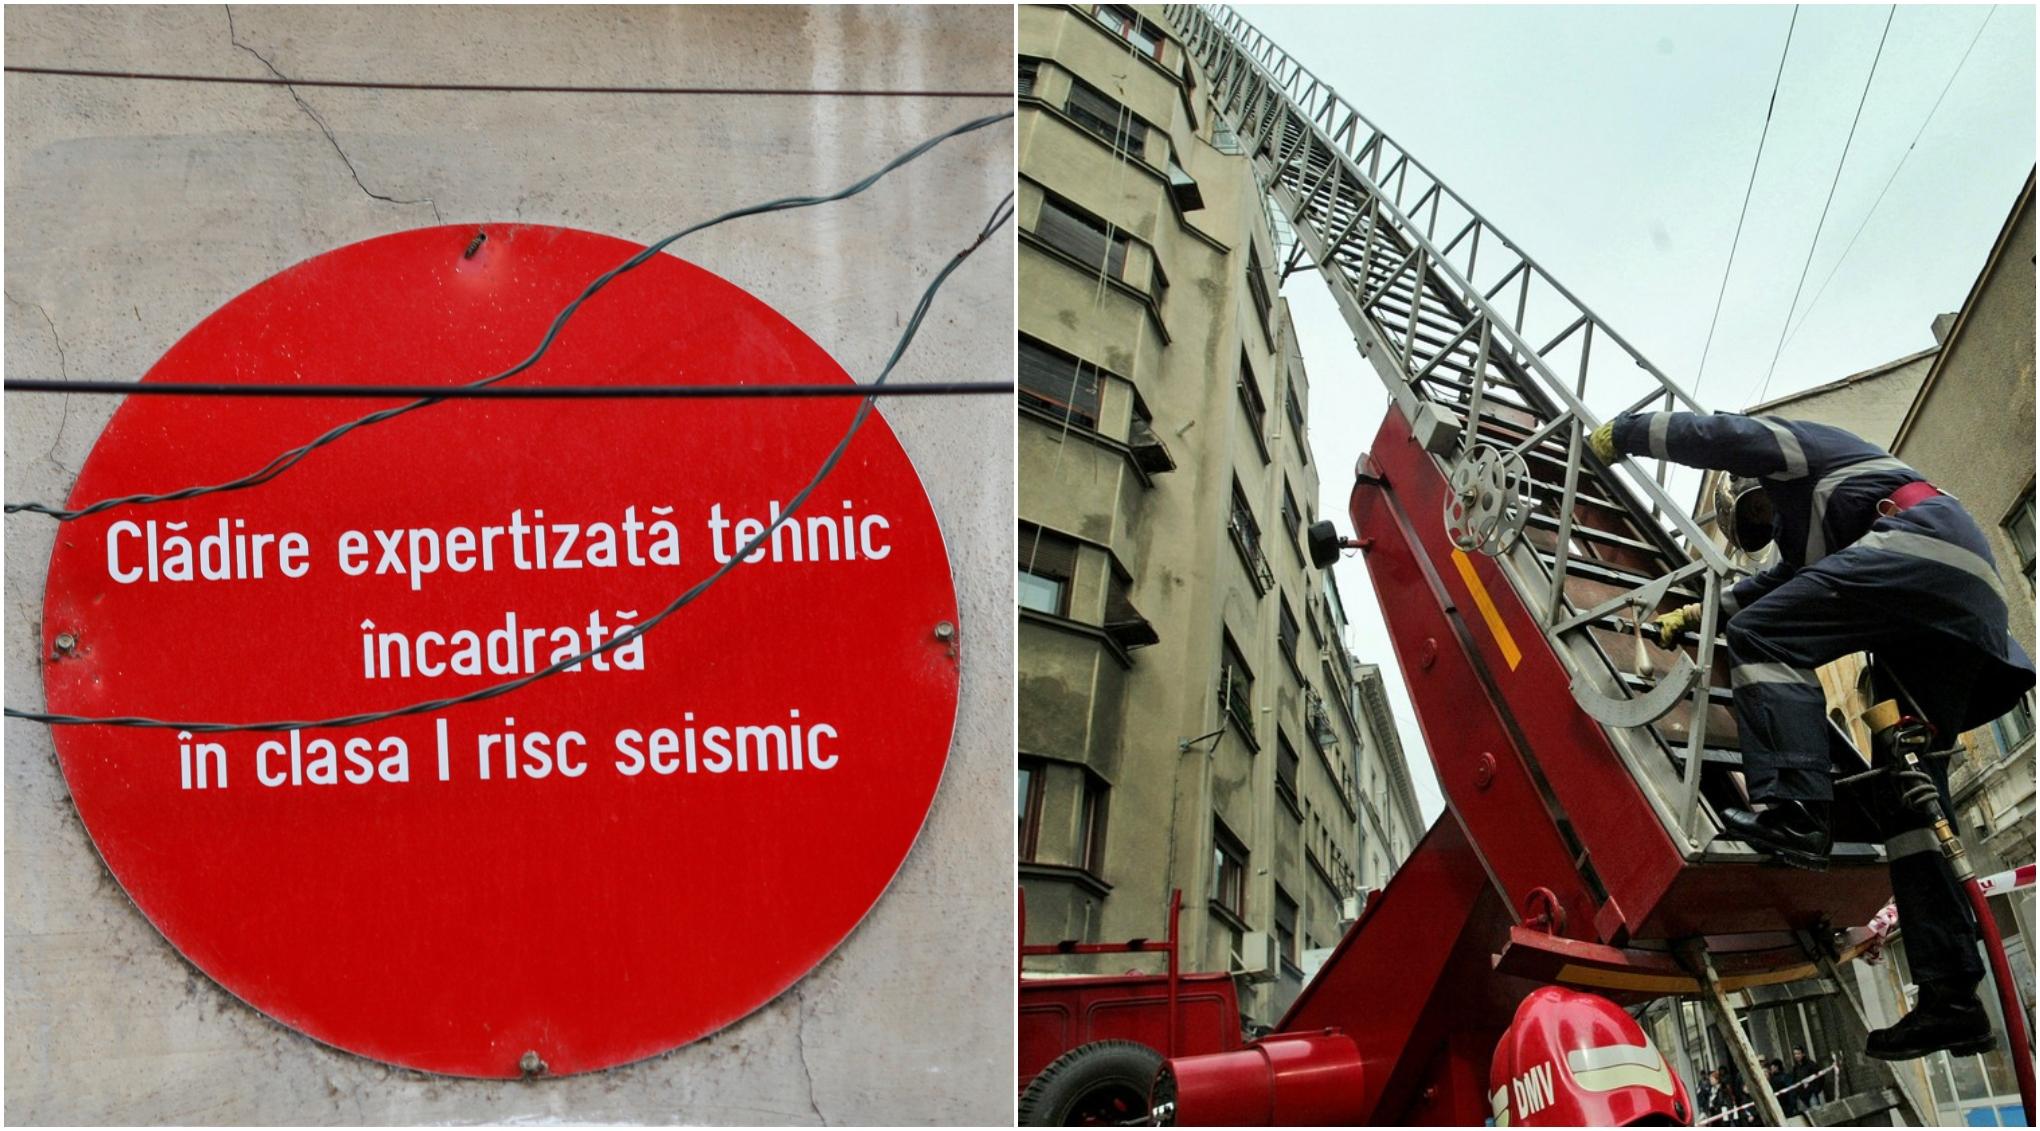 colaj foto semn rosu cu risc seismic pus pe o cladire si o imagine cu un pompier urcand pe o cladire veche